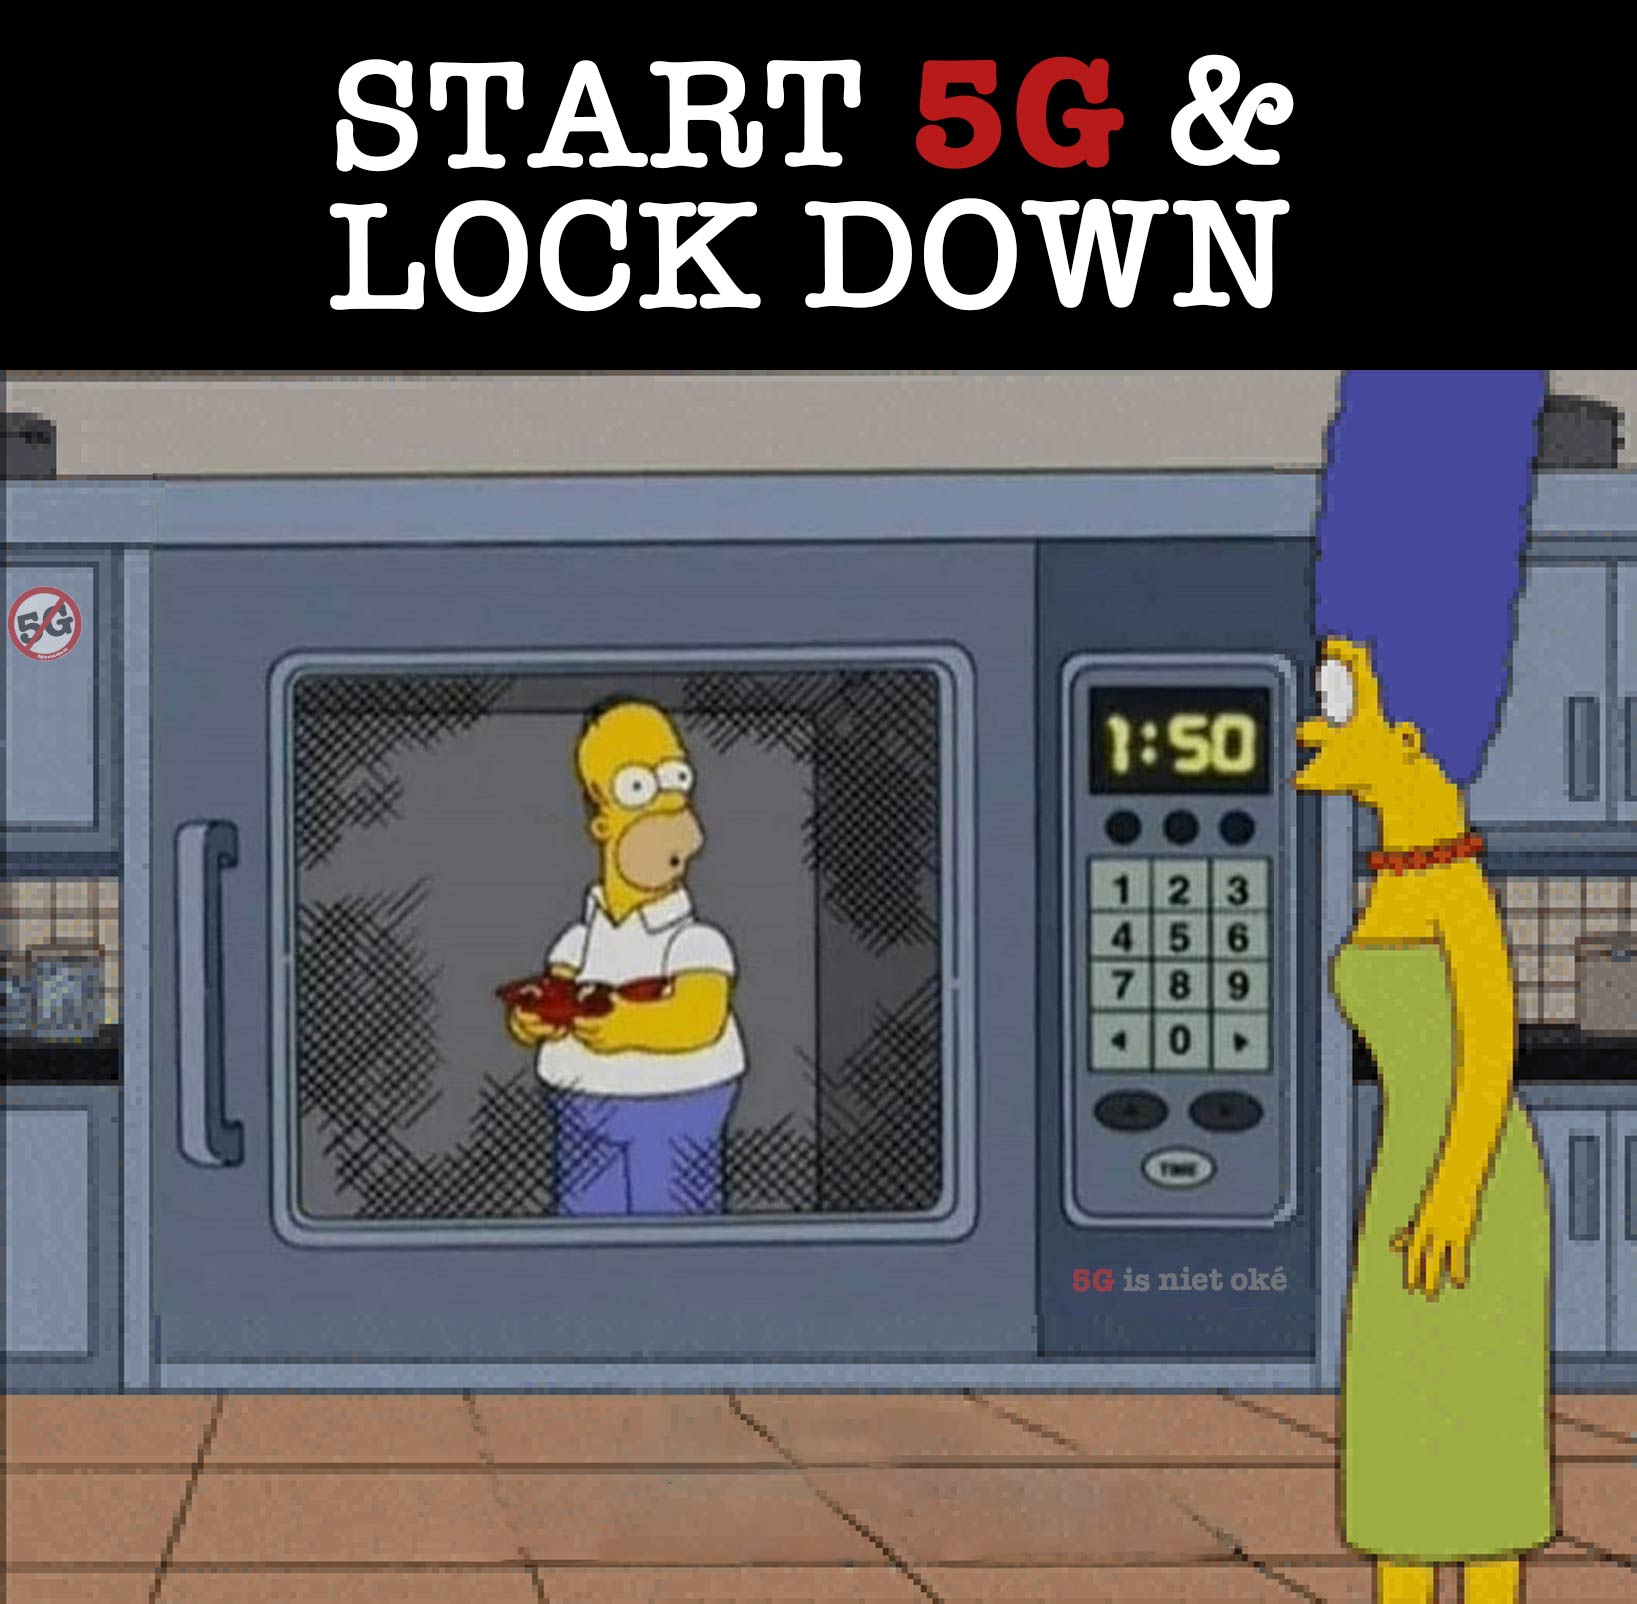 Lockdown en start 5G